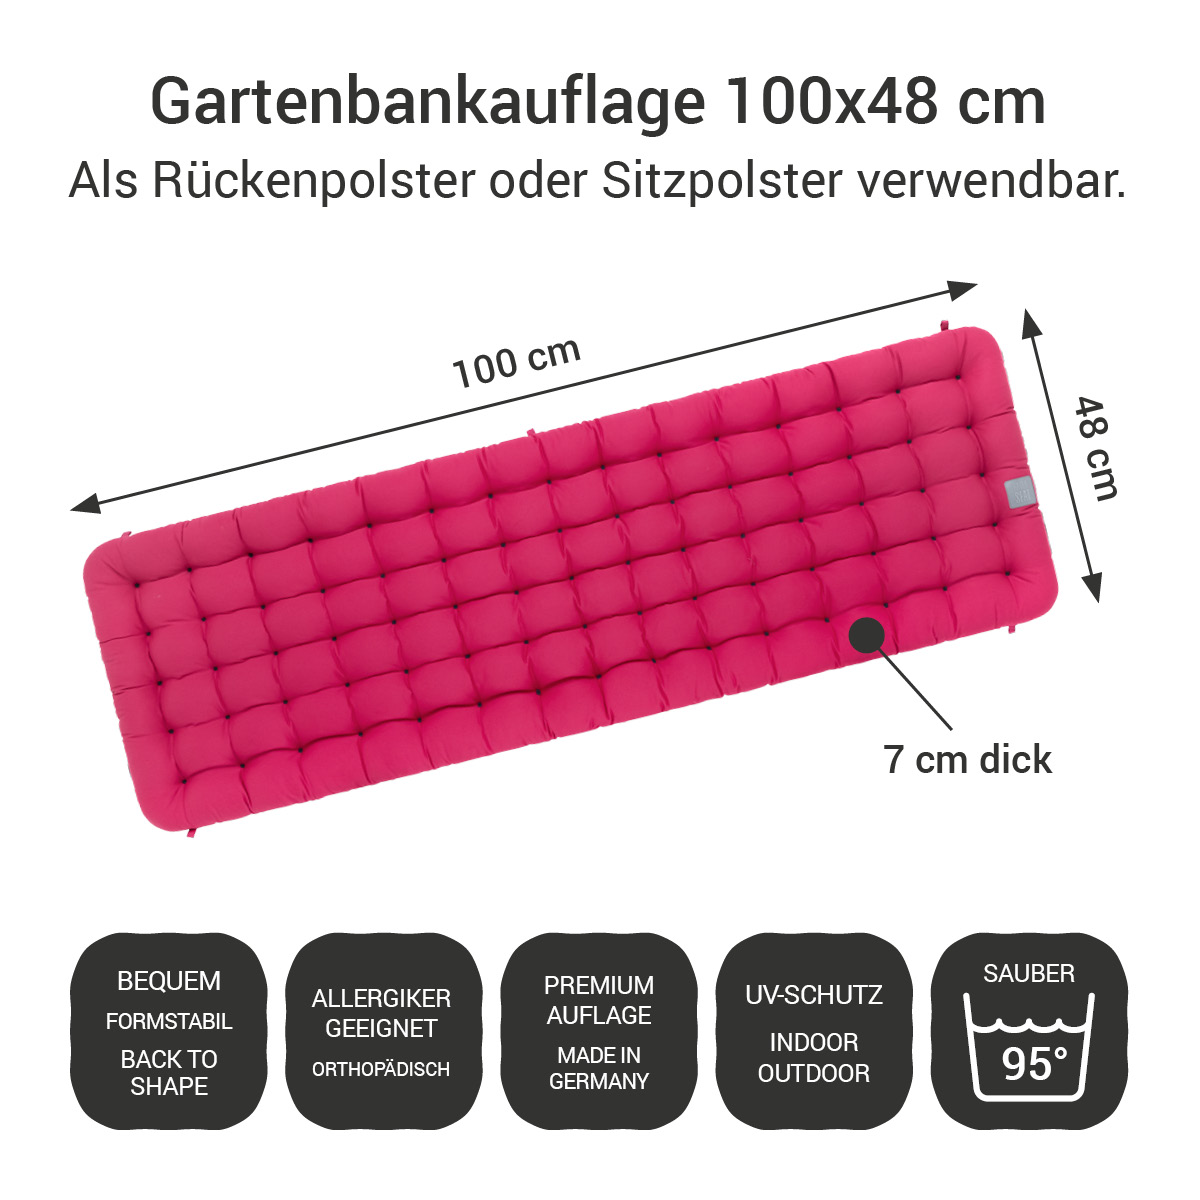 Gartenbankauflage hot pink | 100x48 cm / 100 x 50 cm | bequem & orthopädisch, komplett im Ganzen waschbar bis 95°C, wetterfest, Made in Germany